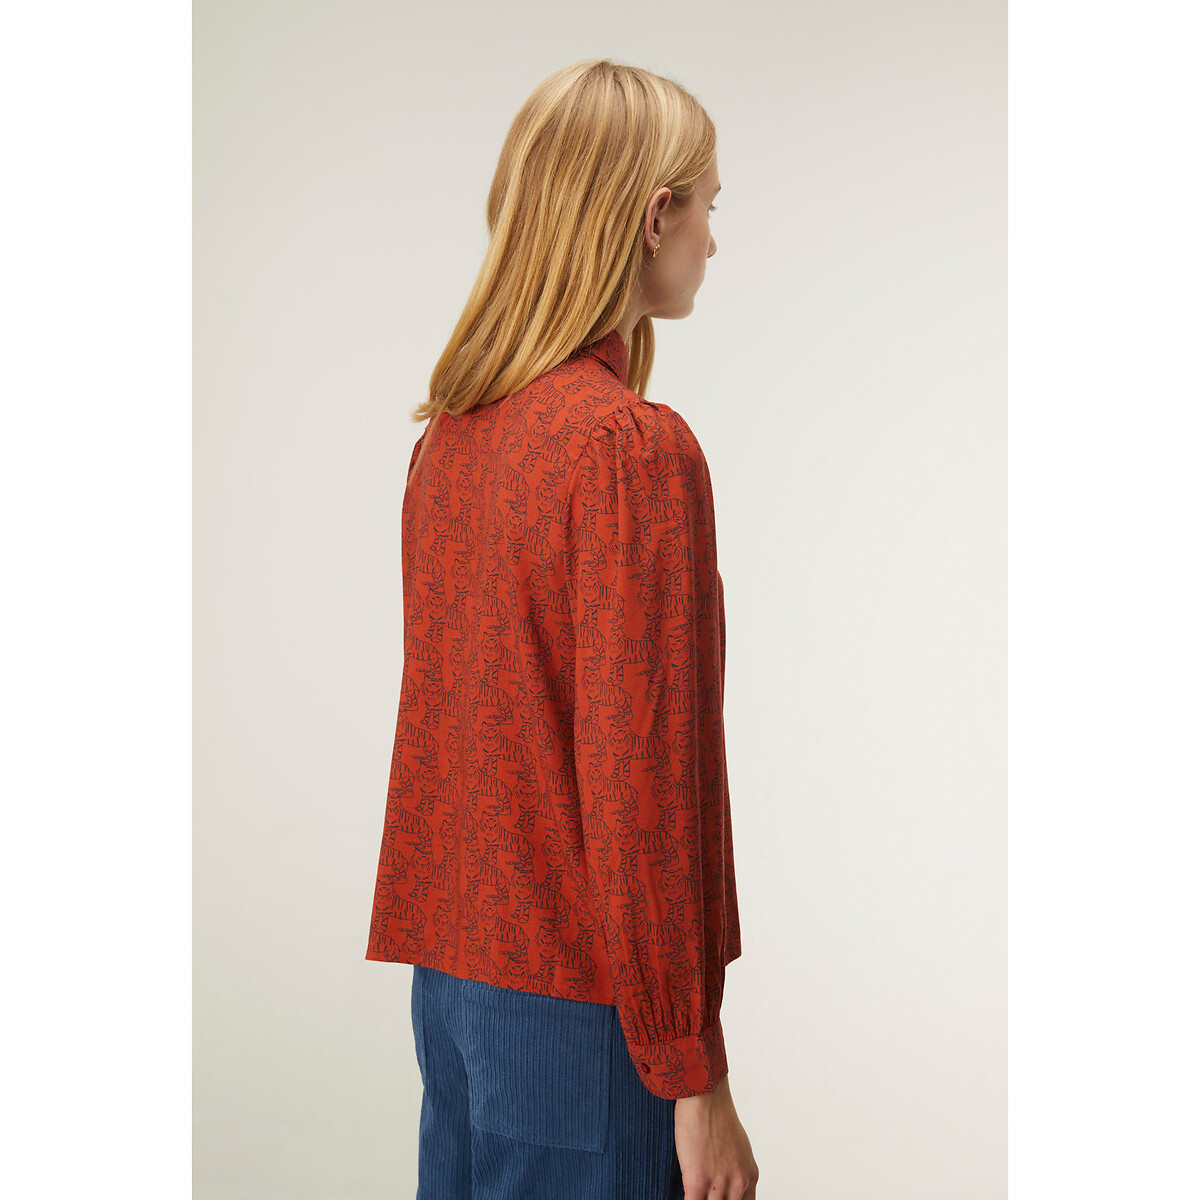 Блузка COMPANIA FANTASTICA Блузка С анималистичным принтом L оранжевый, размер L - фото 2